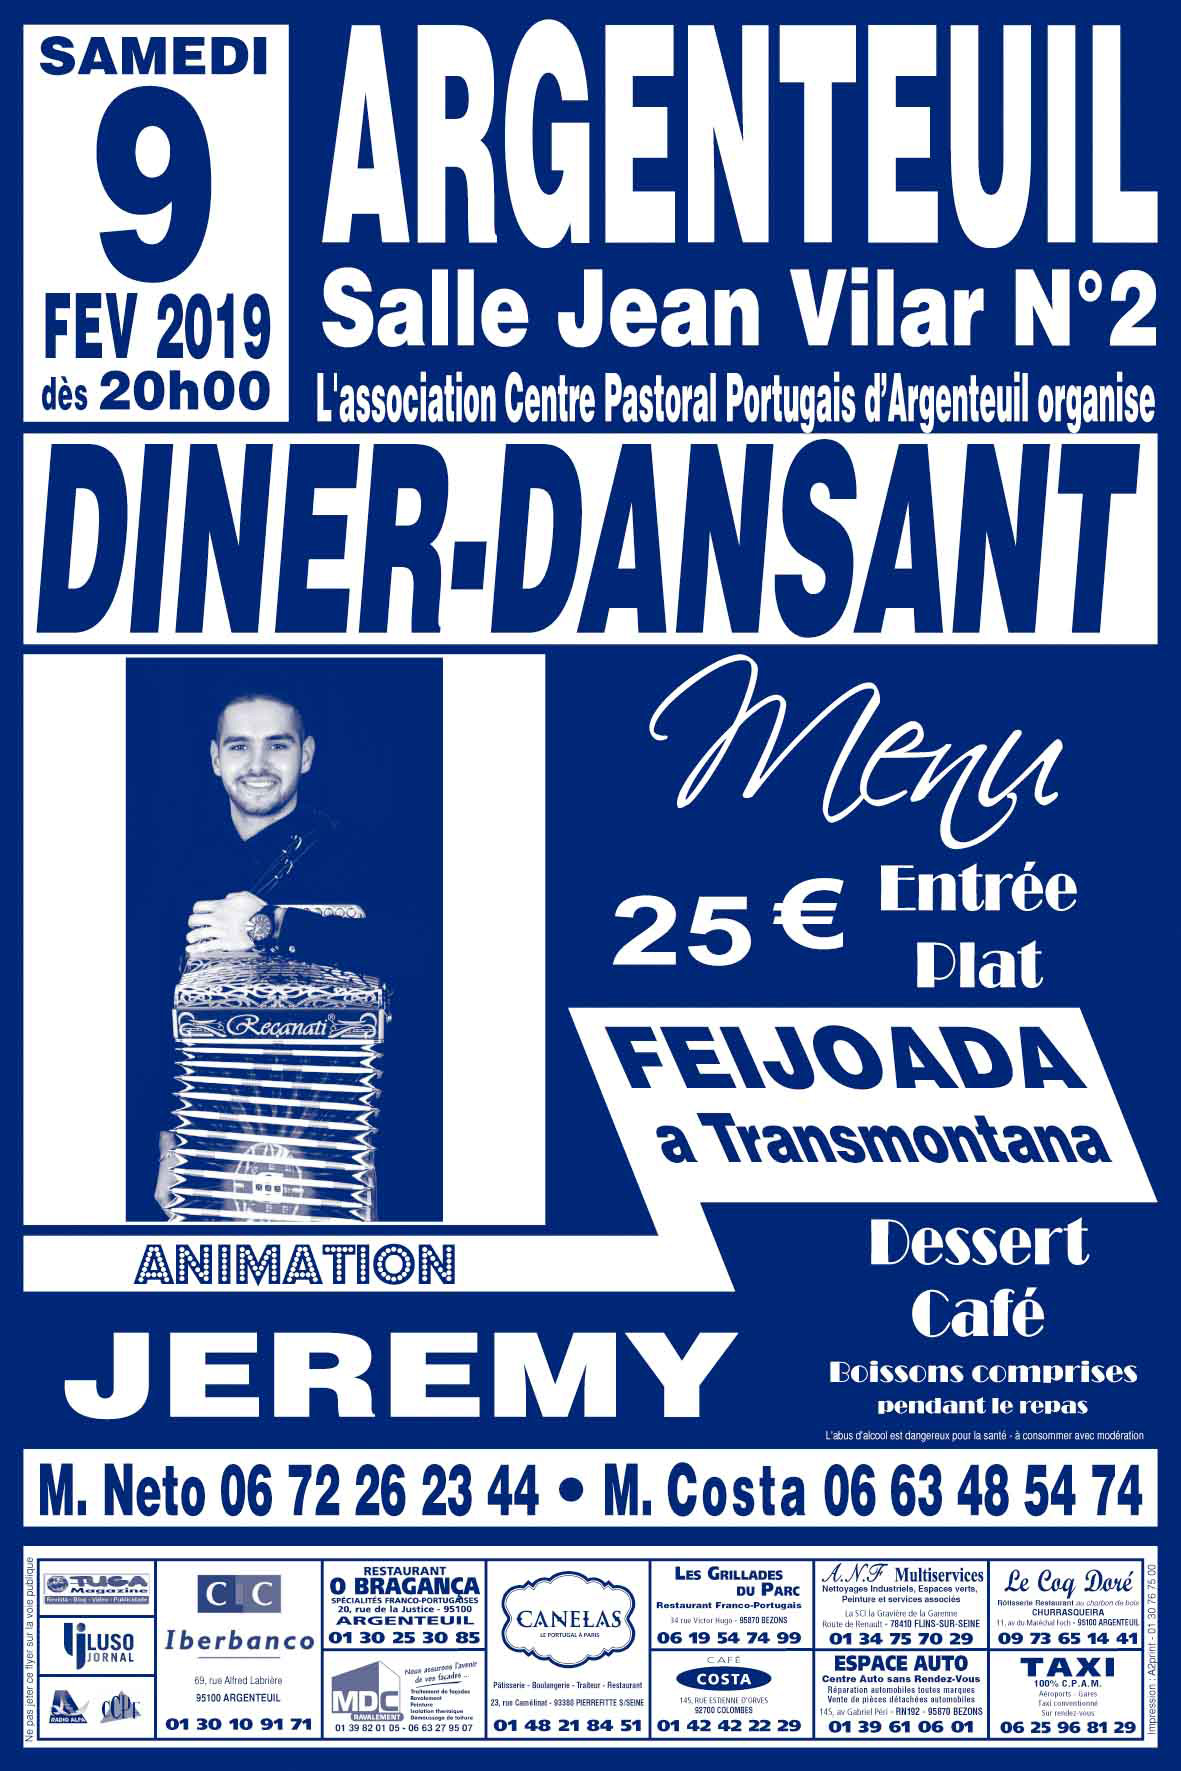 Diner-Dansant à Argenteuil le 9 février 2019